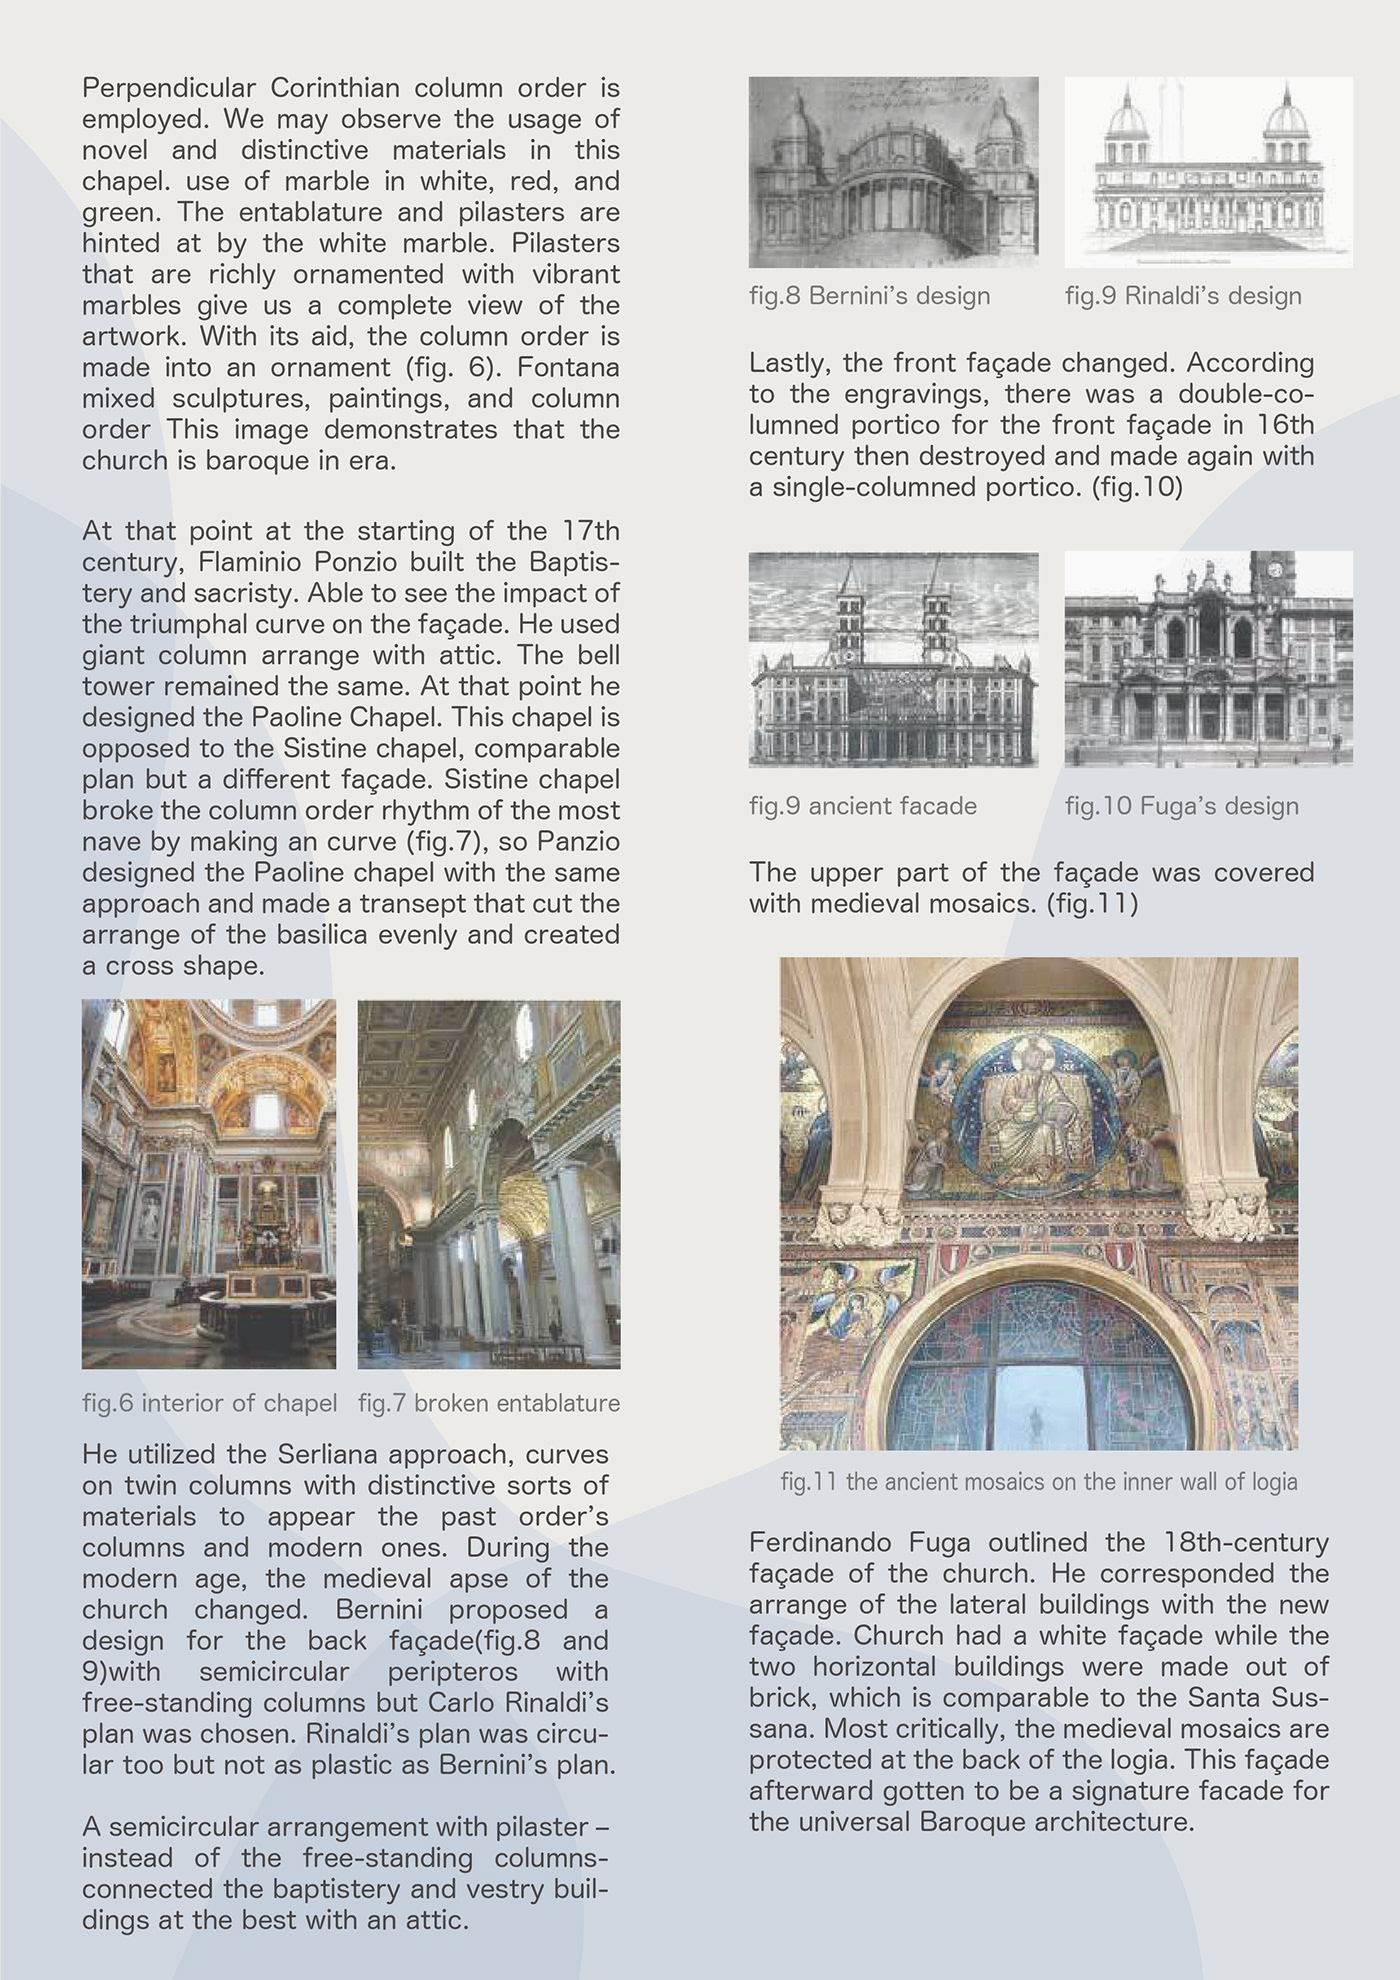 architecture restoration architettura restauro sapienza research design Rome history